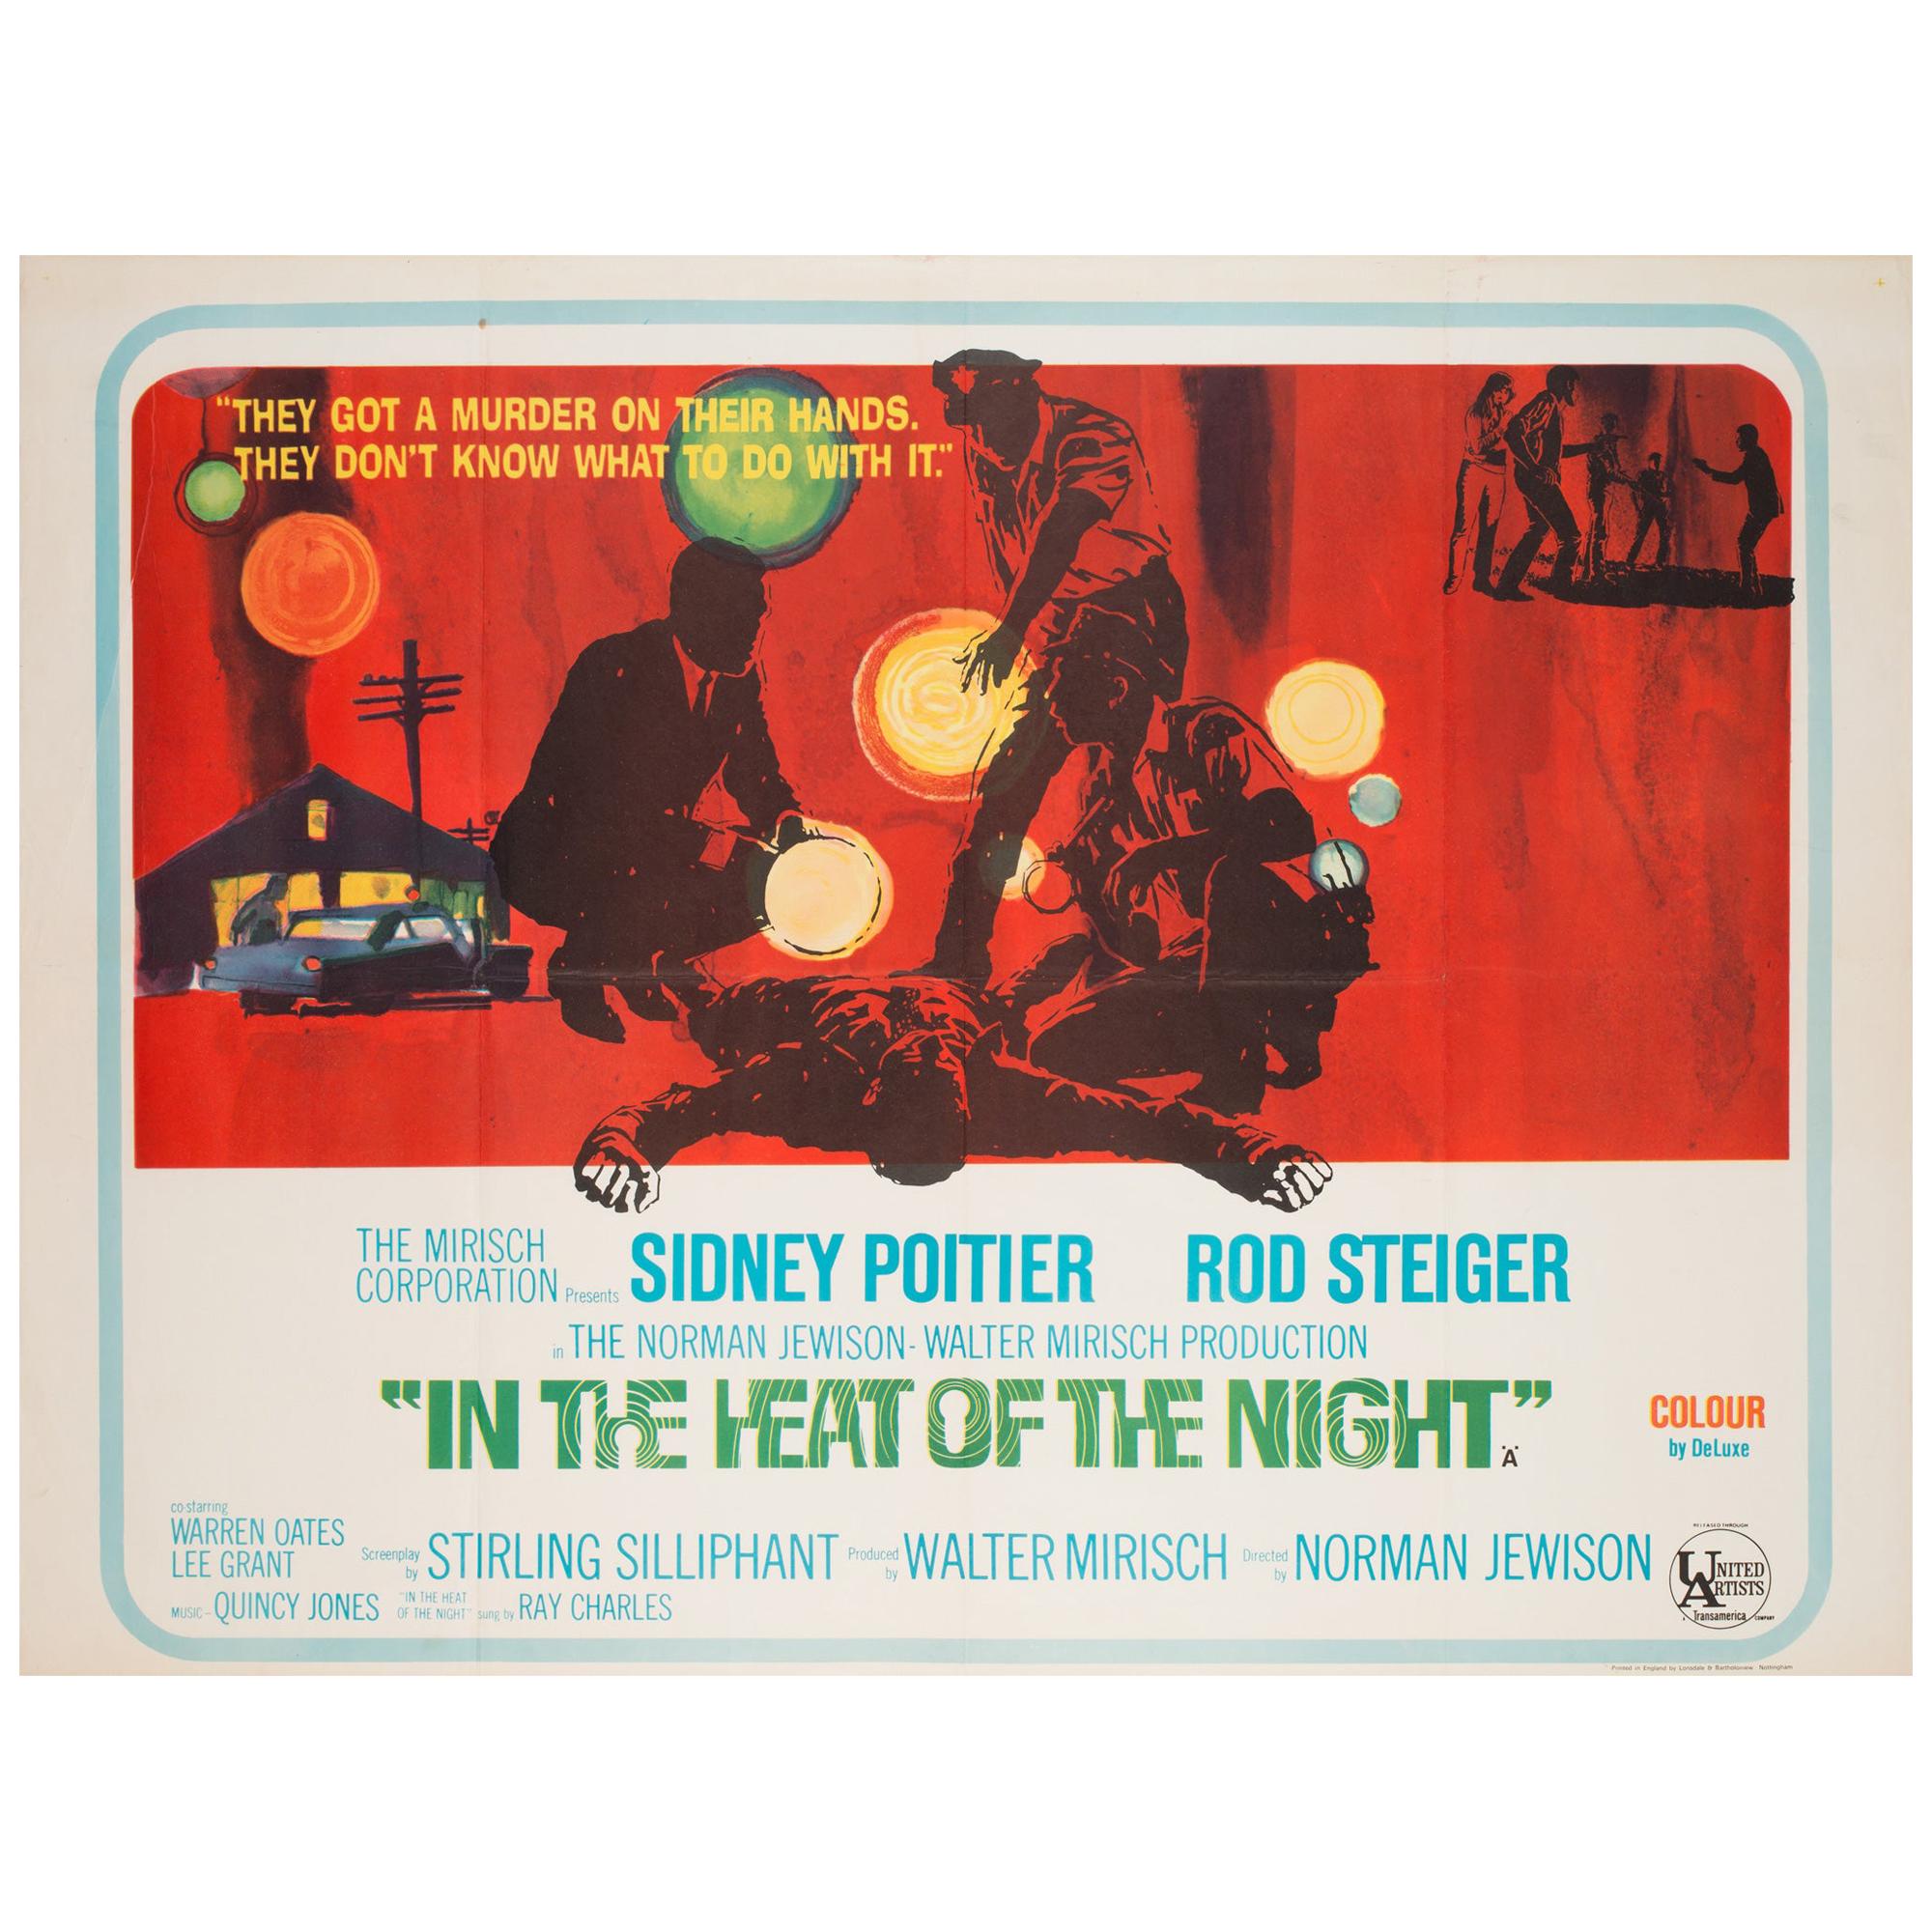 Das passend düstere Kunstwerk auf diesem alten Filmplakat für Norman Jewisons düsteren Film 
In der Hitze der Nacht. Es funktioniert besonders gut auf dem britischen Quad.

Wird gefaltet versandt, wie ursprünglich ausgestellt. In